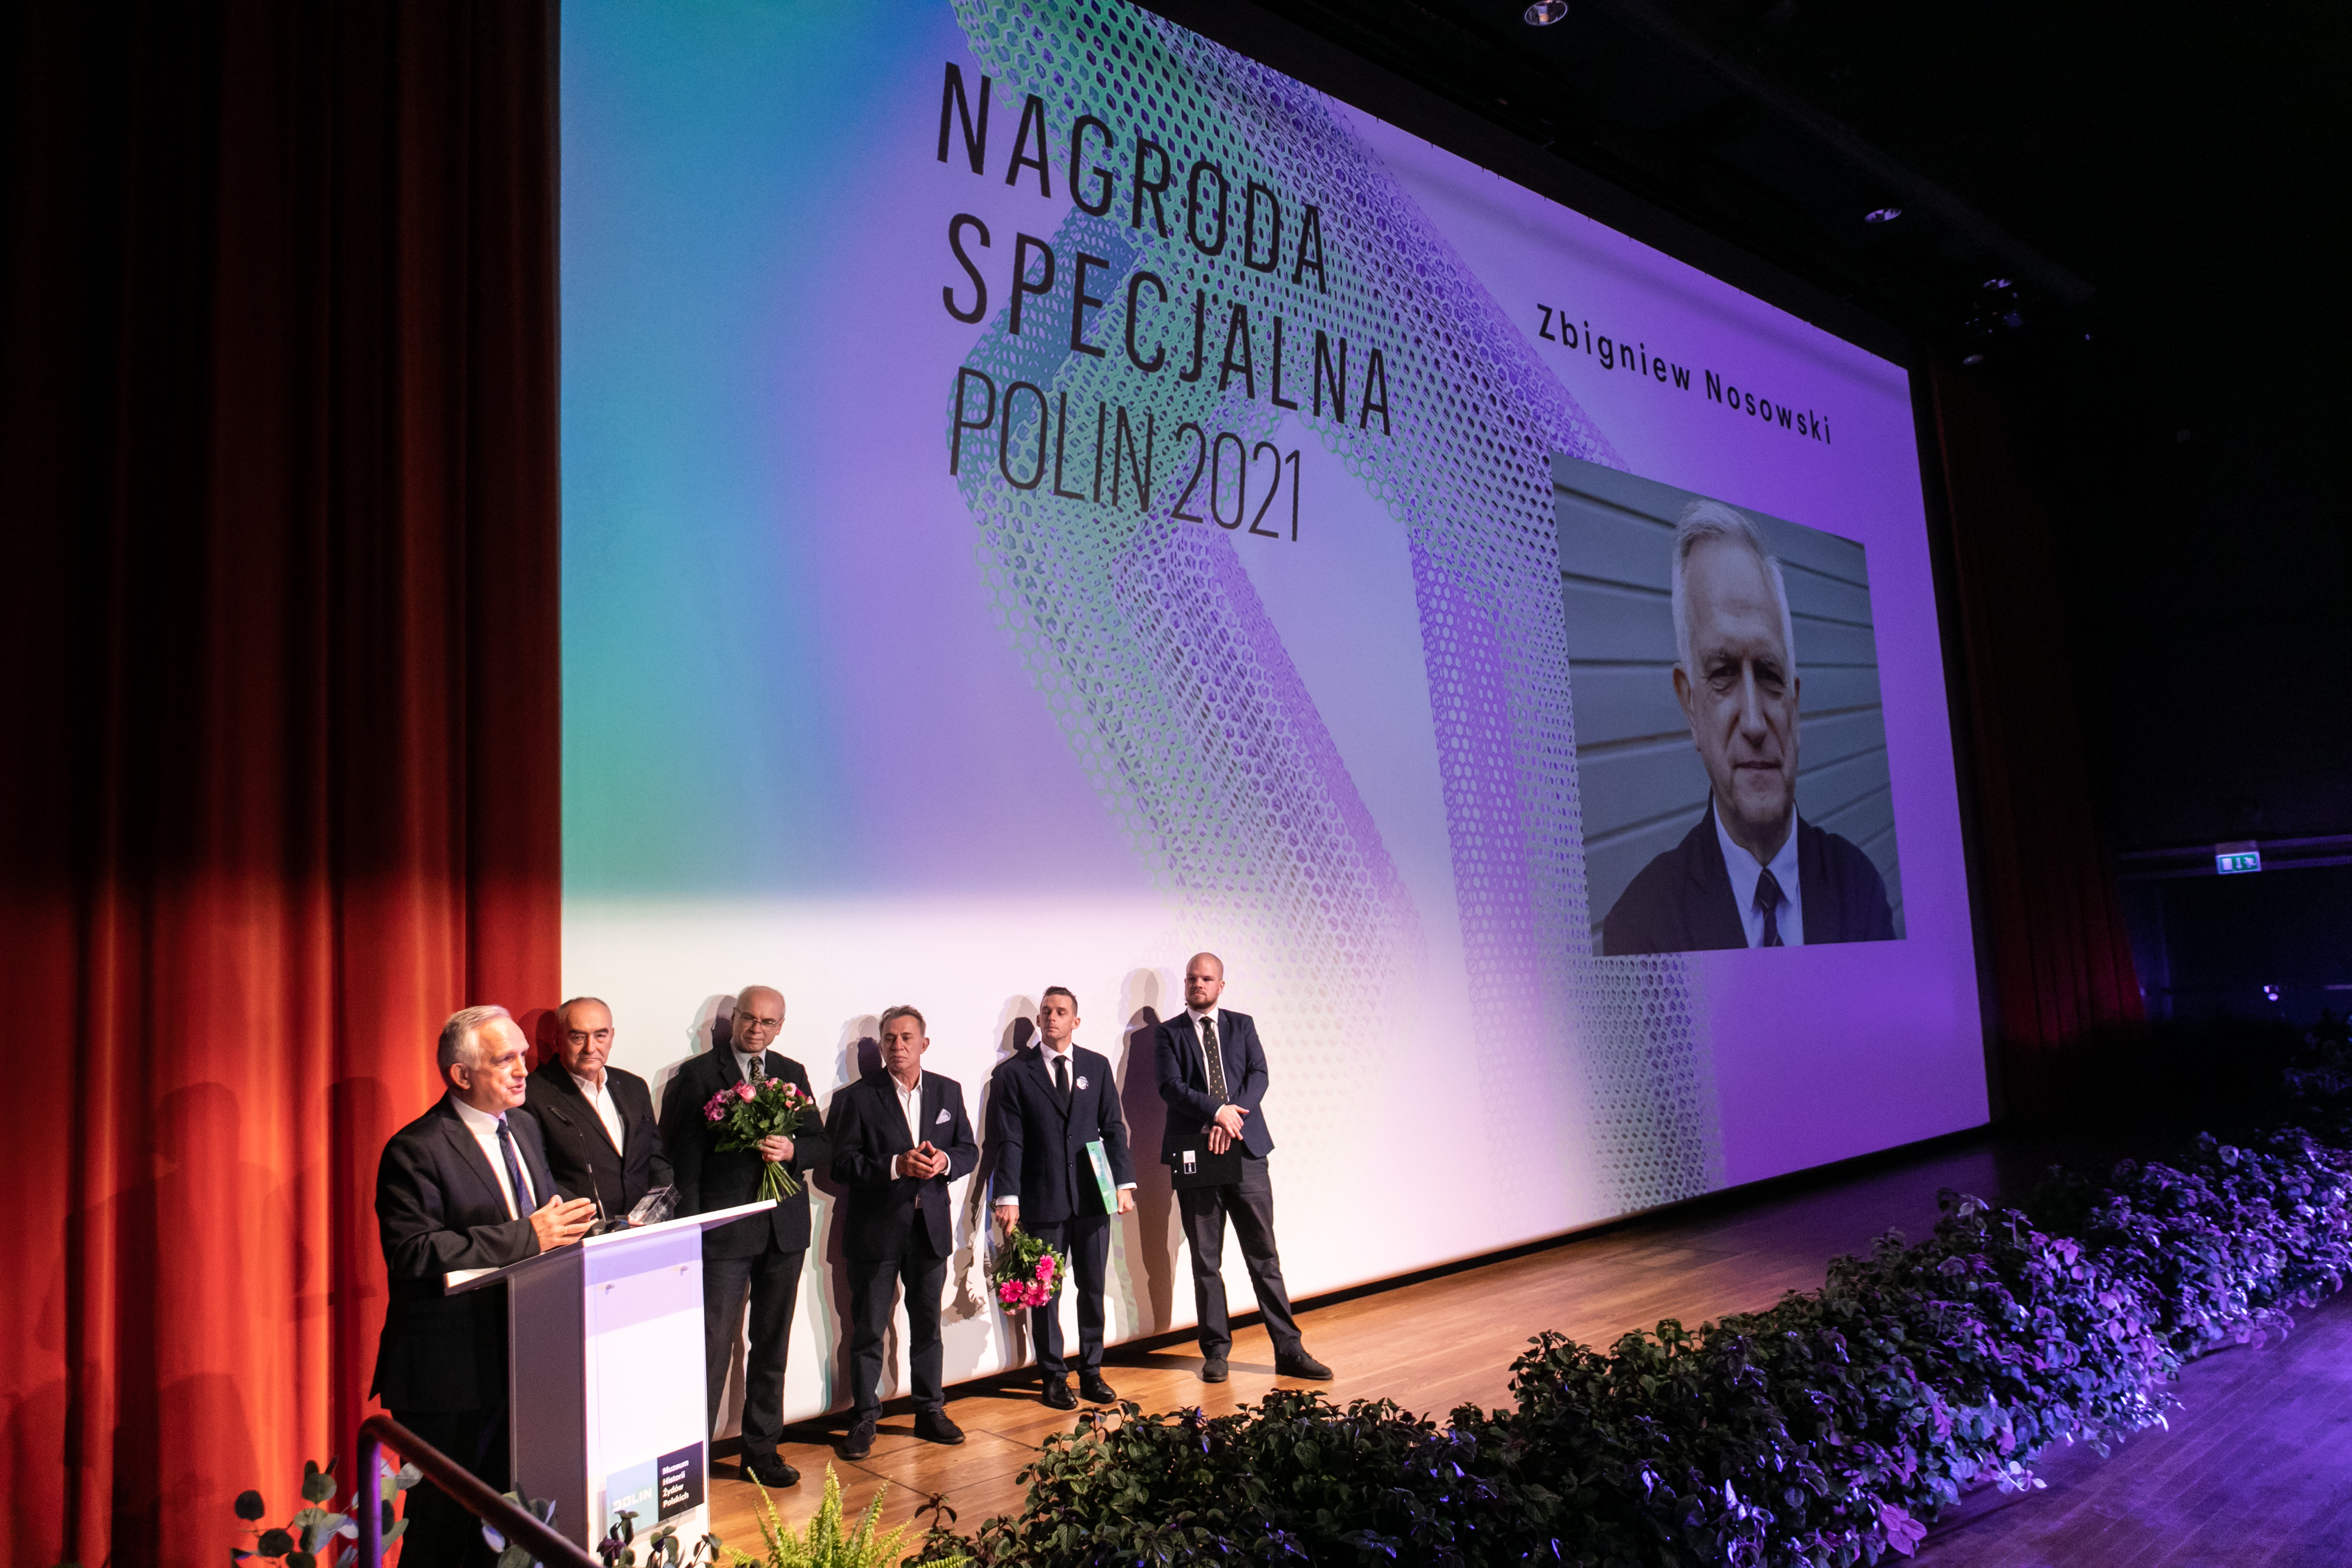 Zbigniew Nosowski - laureat Nagrody Specjalnej w konkursie Nagroda POLIN 2021 - wygłasza mowę